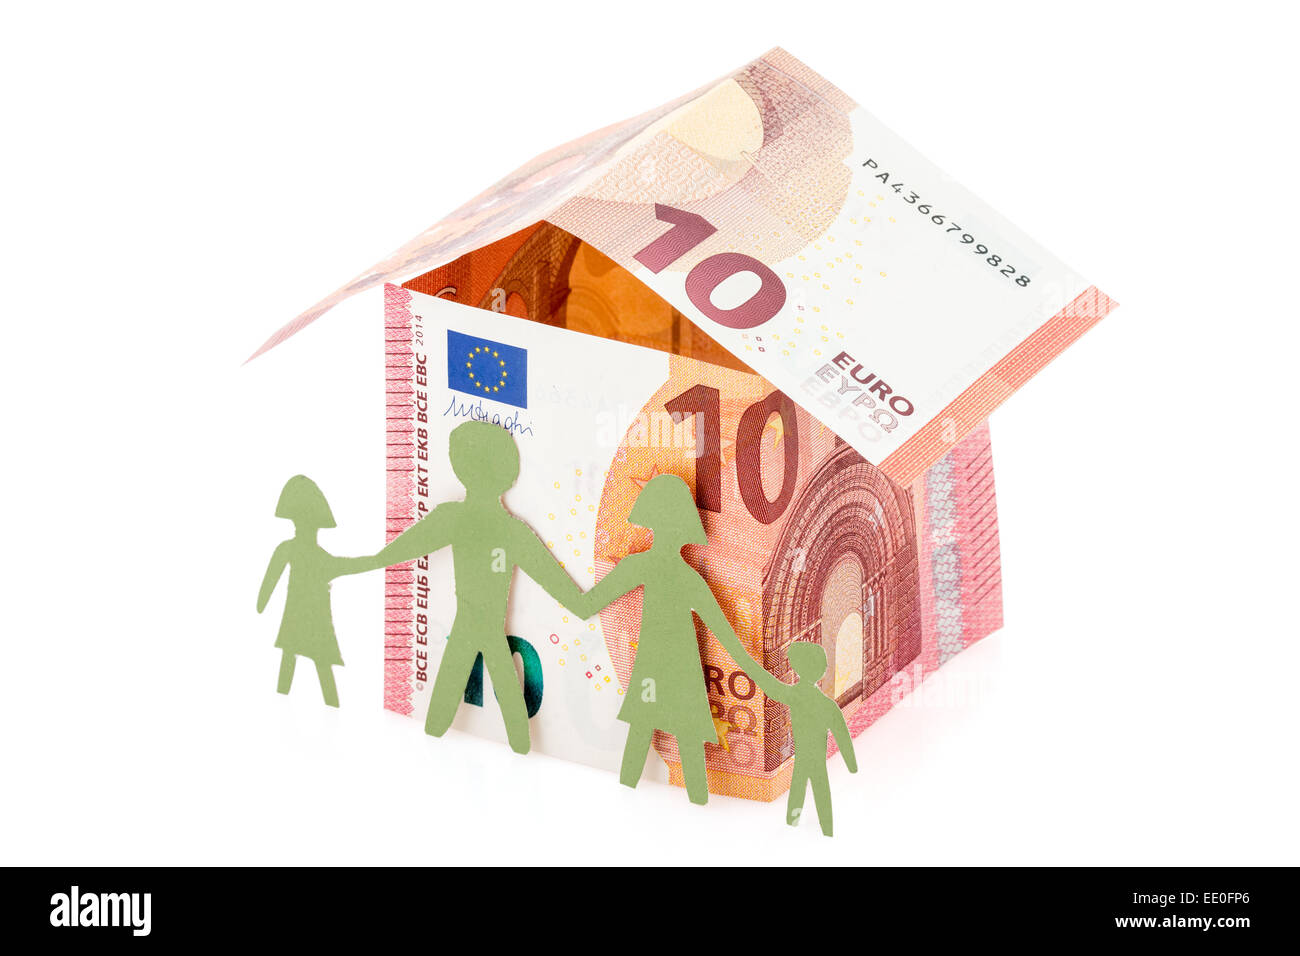 La famille et leur maison en euro banknotes Banque D'Images